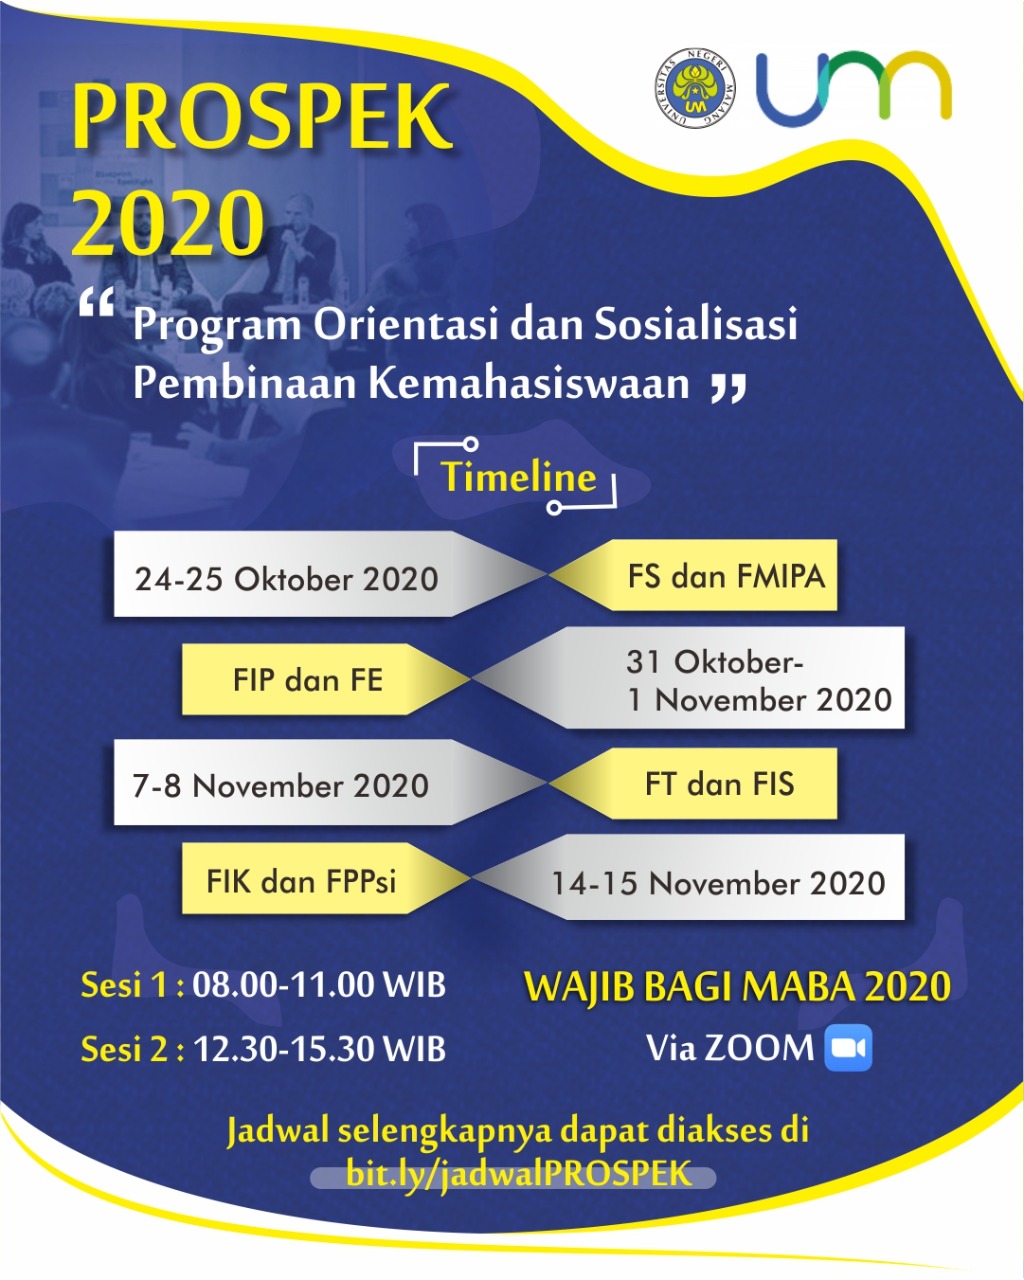 Program Orientasi dan Sosialisasi Pembinaan Kemahasiswaan (PROSPEK) Tahun 2020